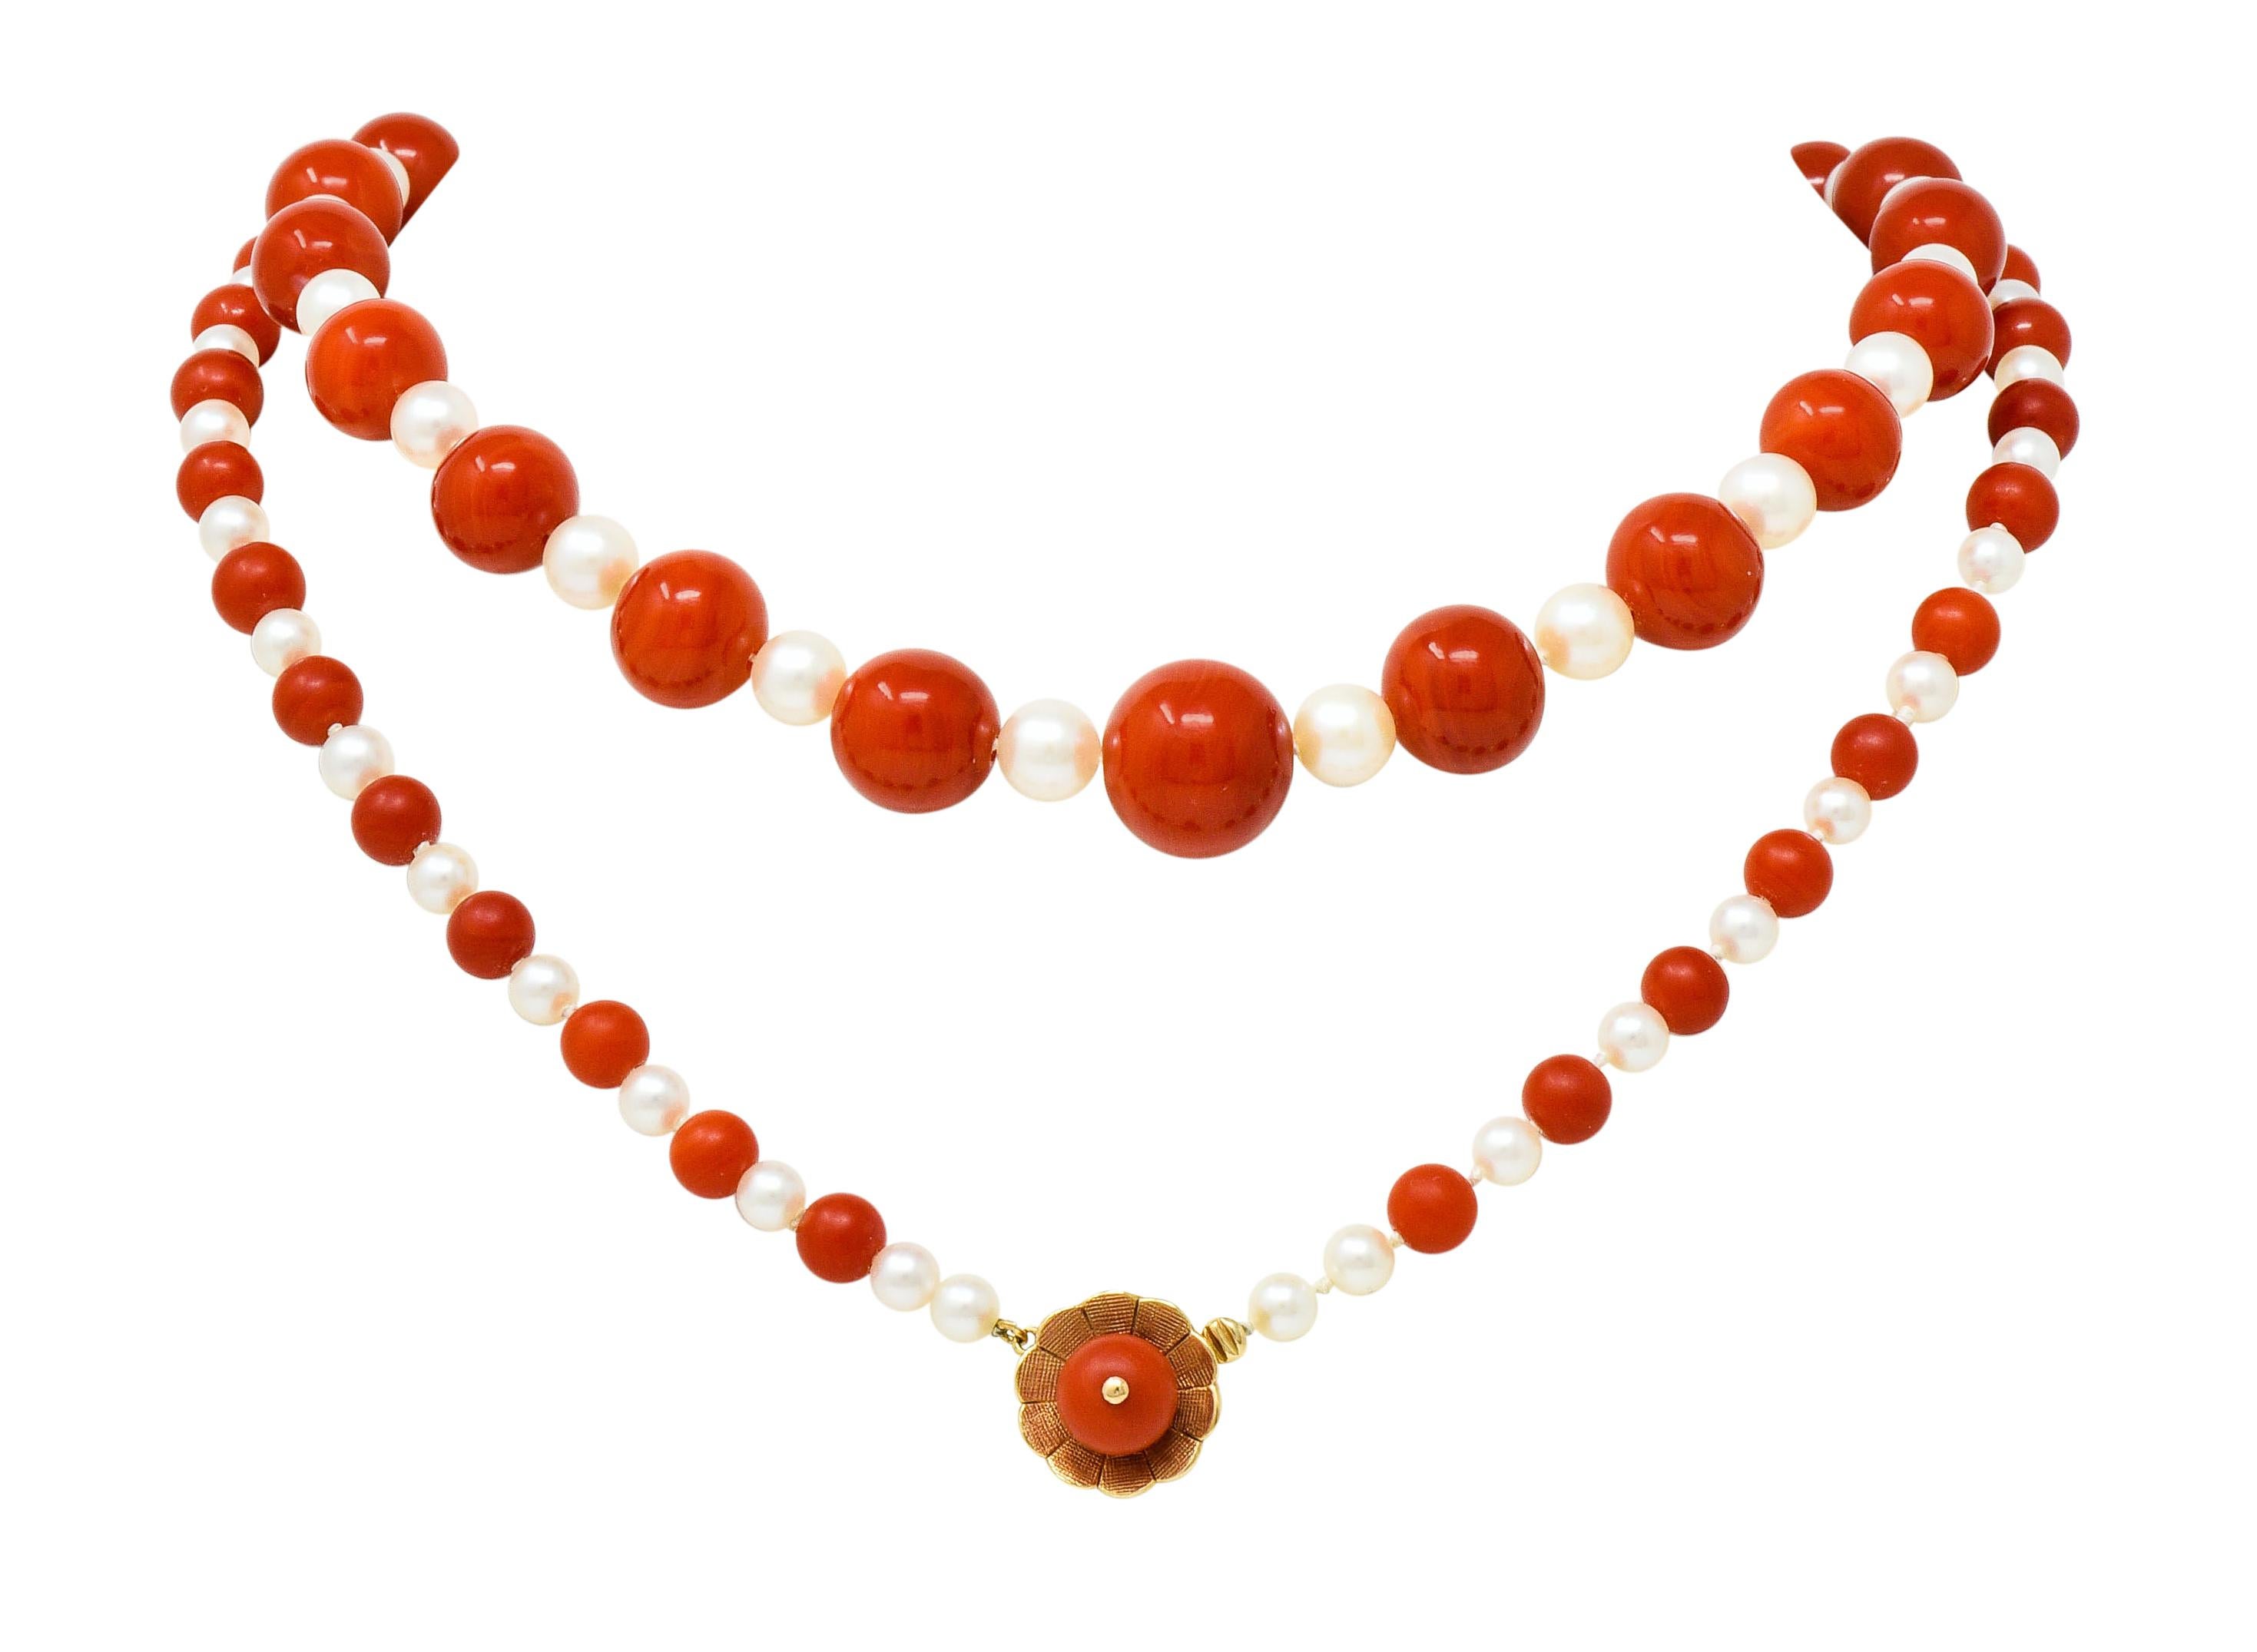 Handgeknüpfte Halskette mit Korallenperlen, die sich mit Zuchtperlen abwechseln; in der Größe abgestuft

Korallen messen 13,4 bis 6,1 mm und sind sehr gut aufeinander abgestimmt mit gleichmäßig verteilter orange-roter Farbe

Die Zuchtperlen sind 6,8